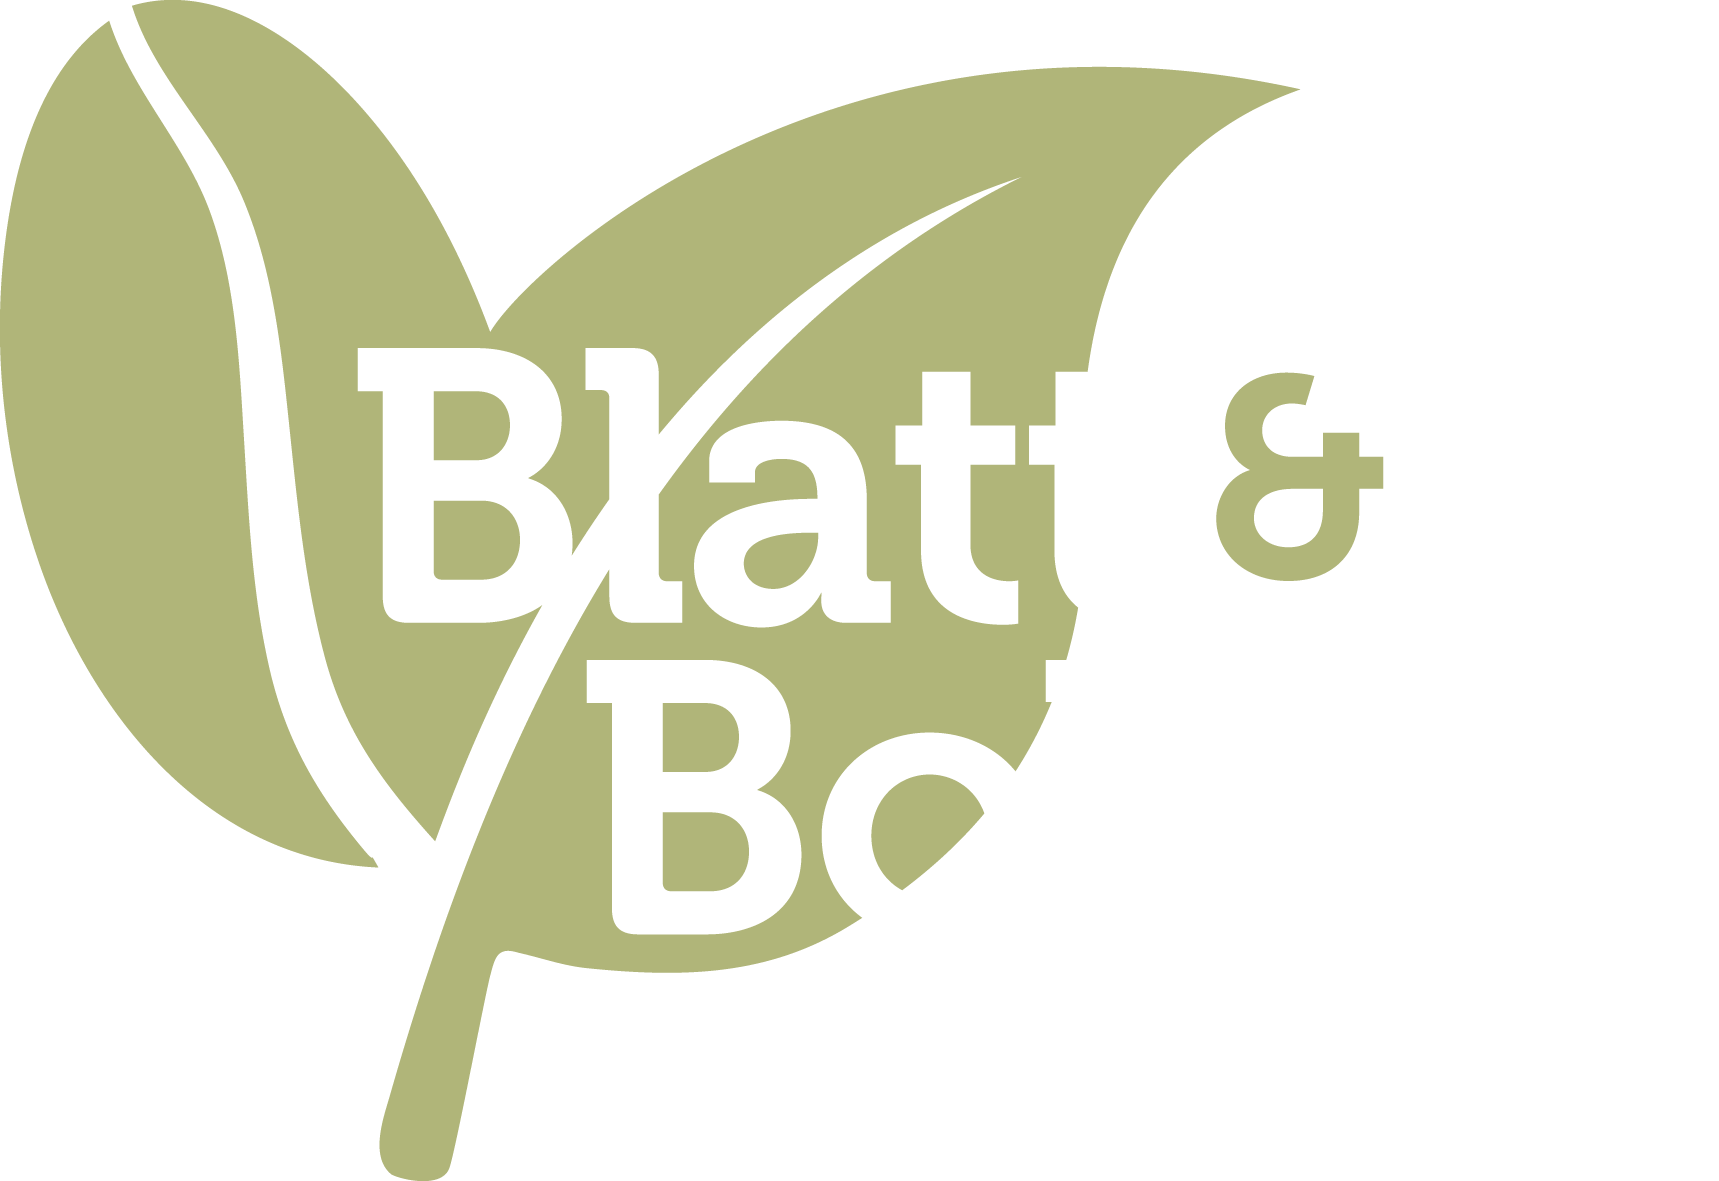 Blatt & Bohne